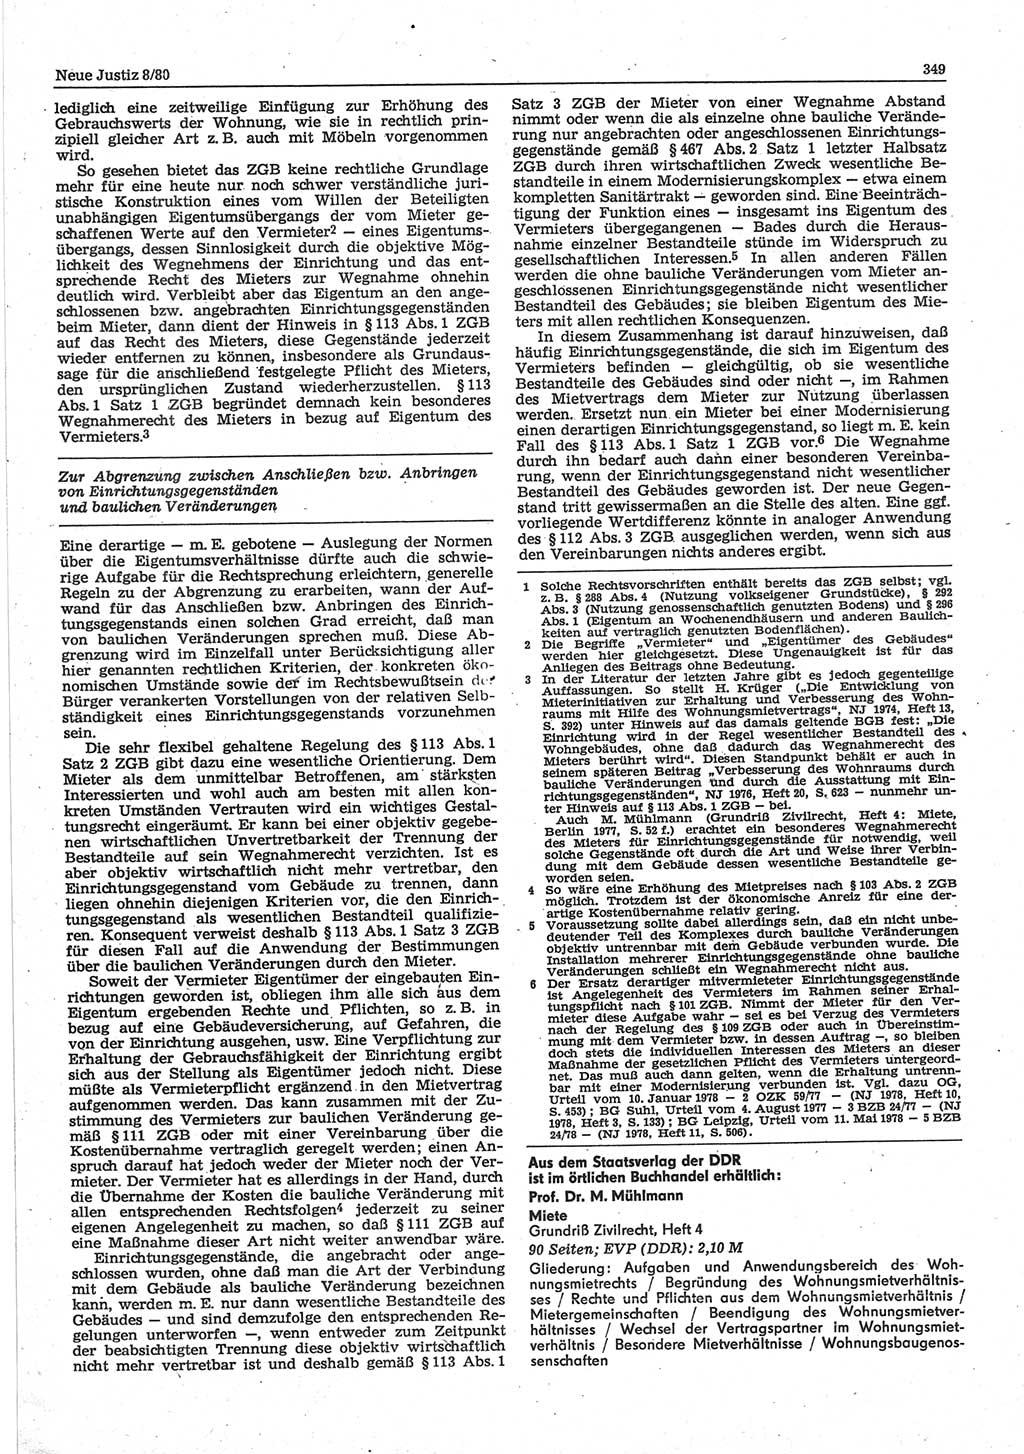 Neue Justiz (NJ), Zeitschrift für sozialistisches Recht und Gesetzlichkeit [Deutsche Demokratische Republik (DDR)], 34. Jahrgang 1980, Seite 349 (NJ DDR 1980, S. 349)